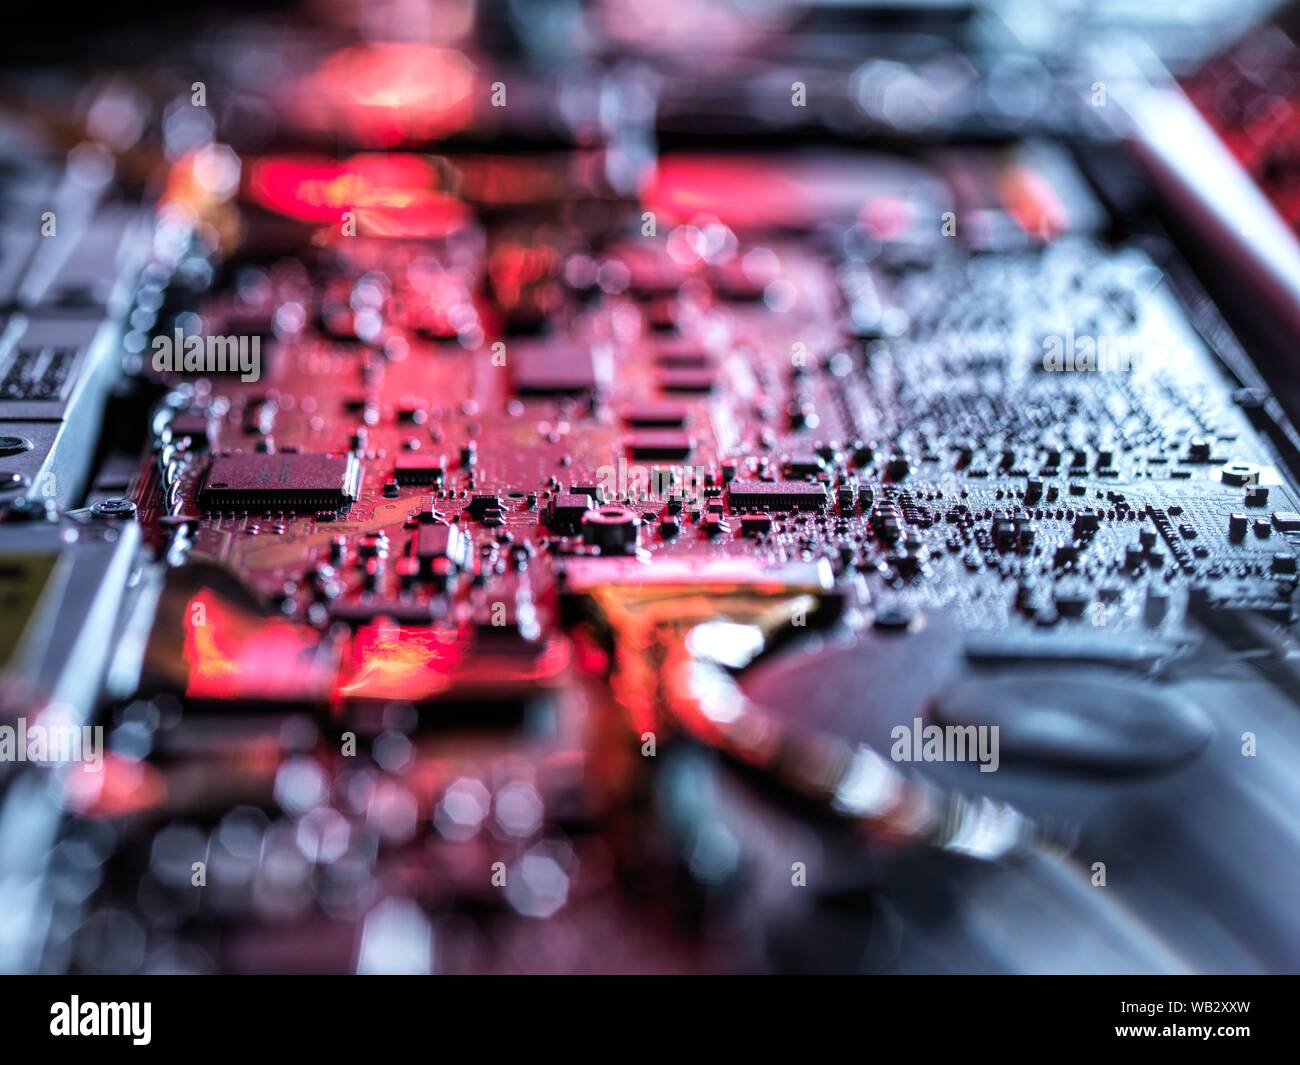 Matériel informatique. L'intérieur d'un ordinateur portable montrant plaquettes, de cartes de circuit imprimé et les composants. Banque D'Images